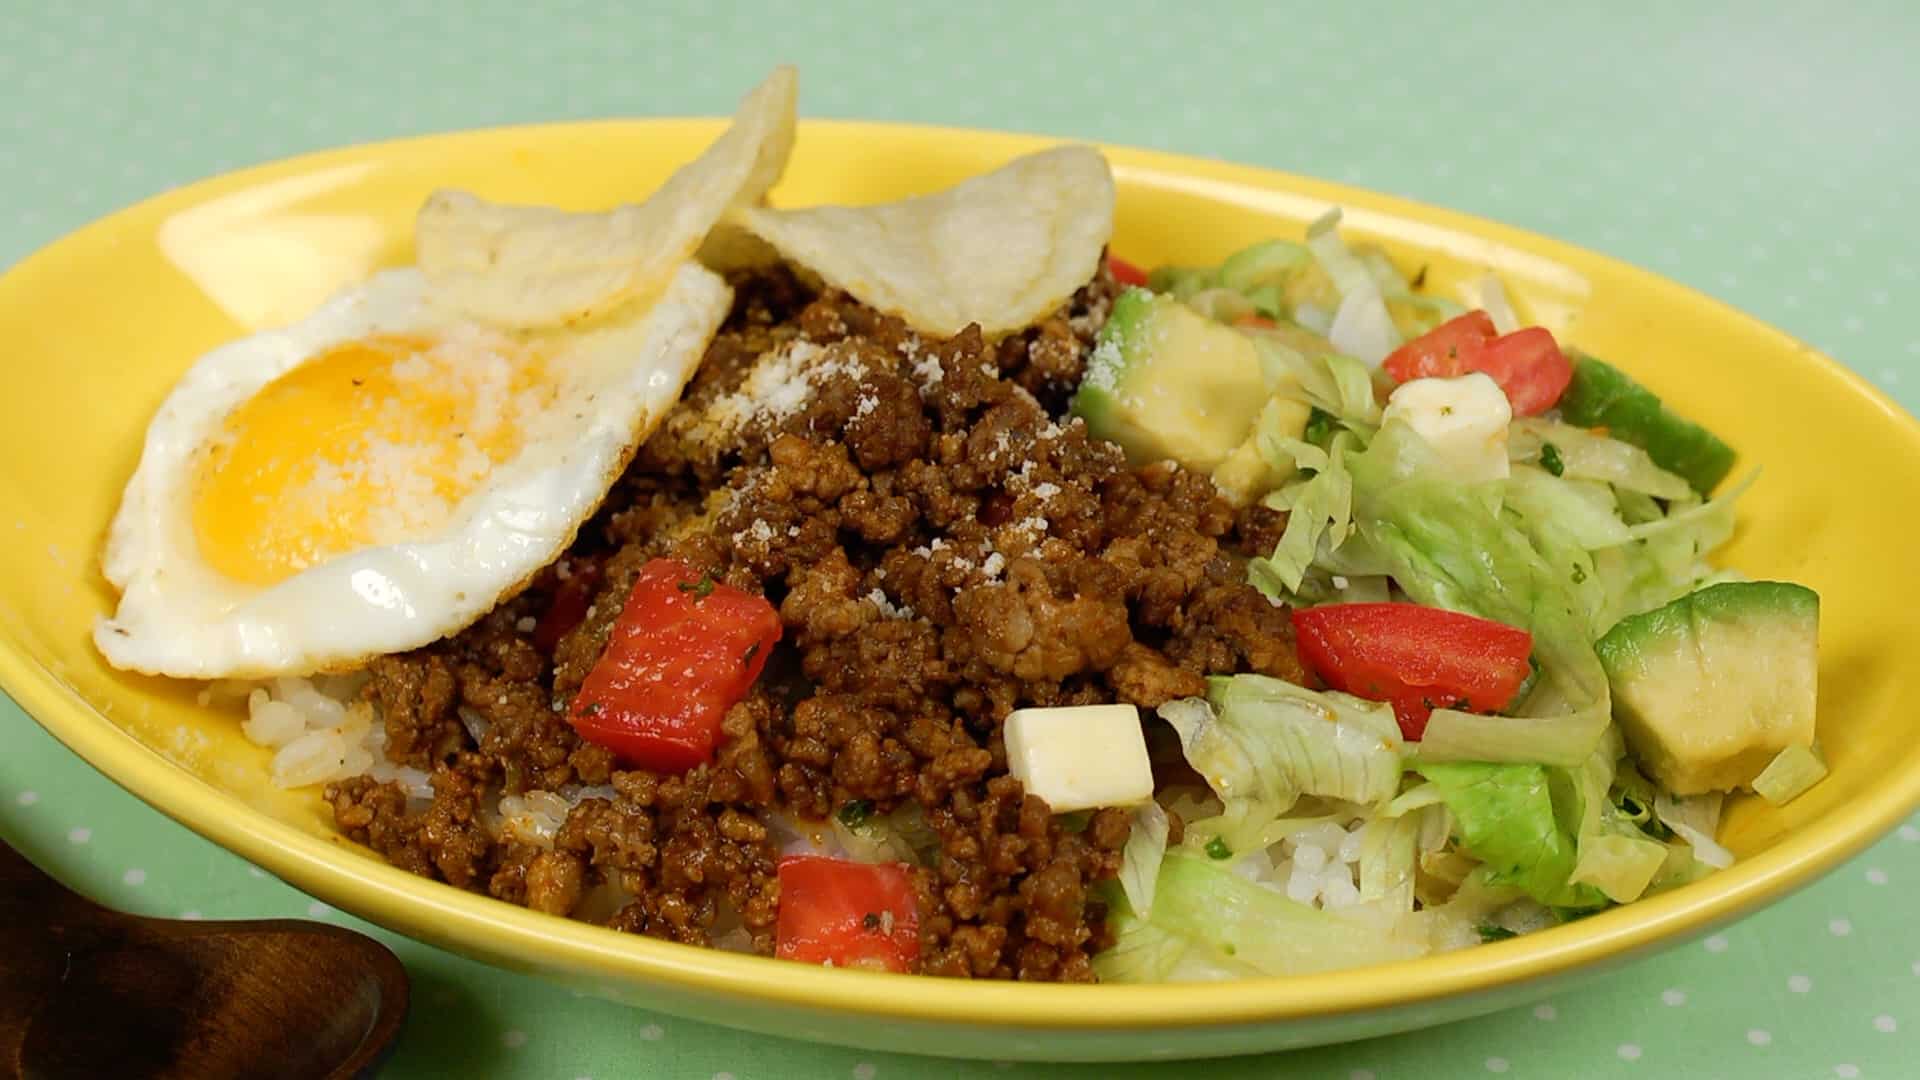 Taco Rice - Salu Salo Recipes